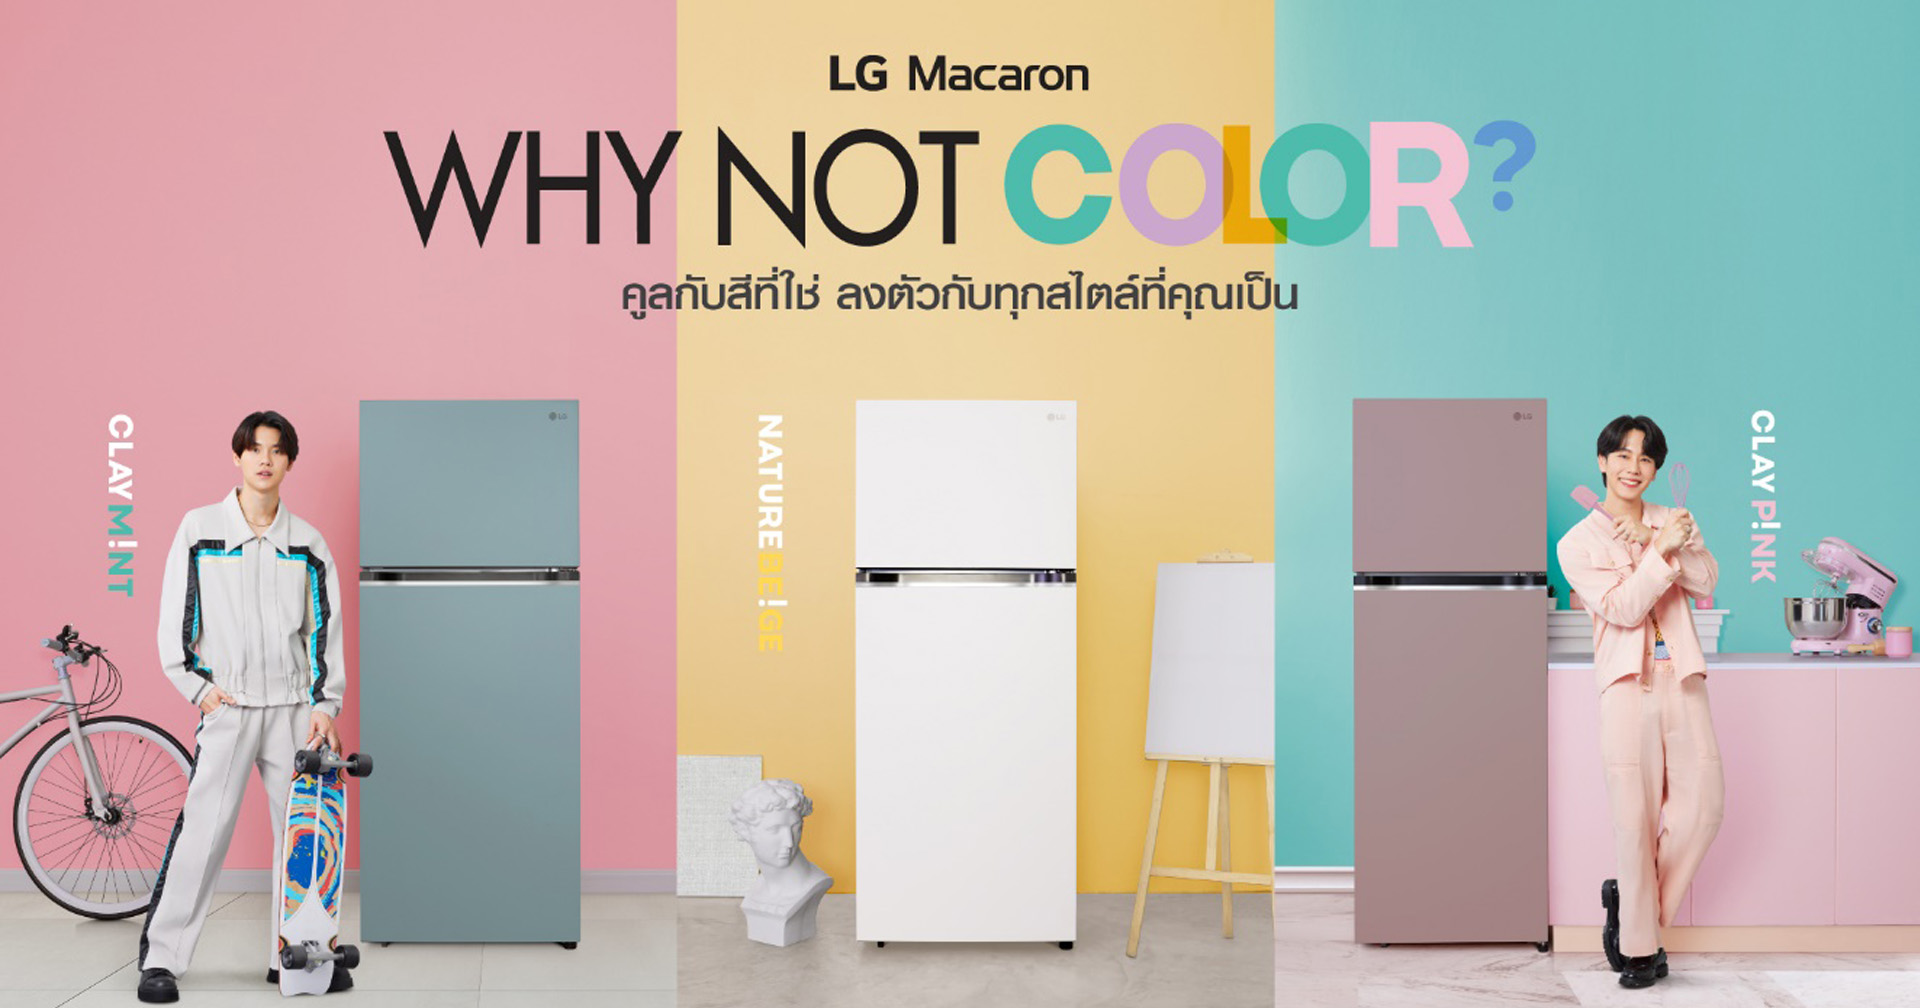 แอลจีส่งทัพนวัตกรรมตู้เย็นล่าสุด นำโดย LG Macaron พร้อมดึง ‘หยิ่น-วอร์’ จัดแคมเปญเจาะกลุ่ม Gen Z